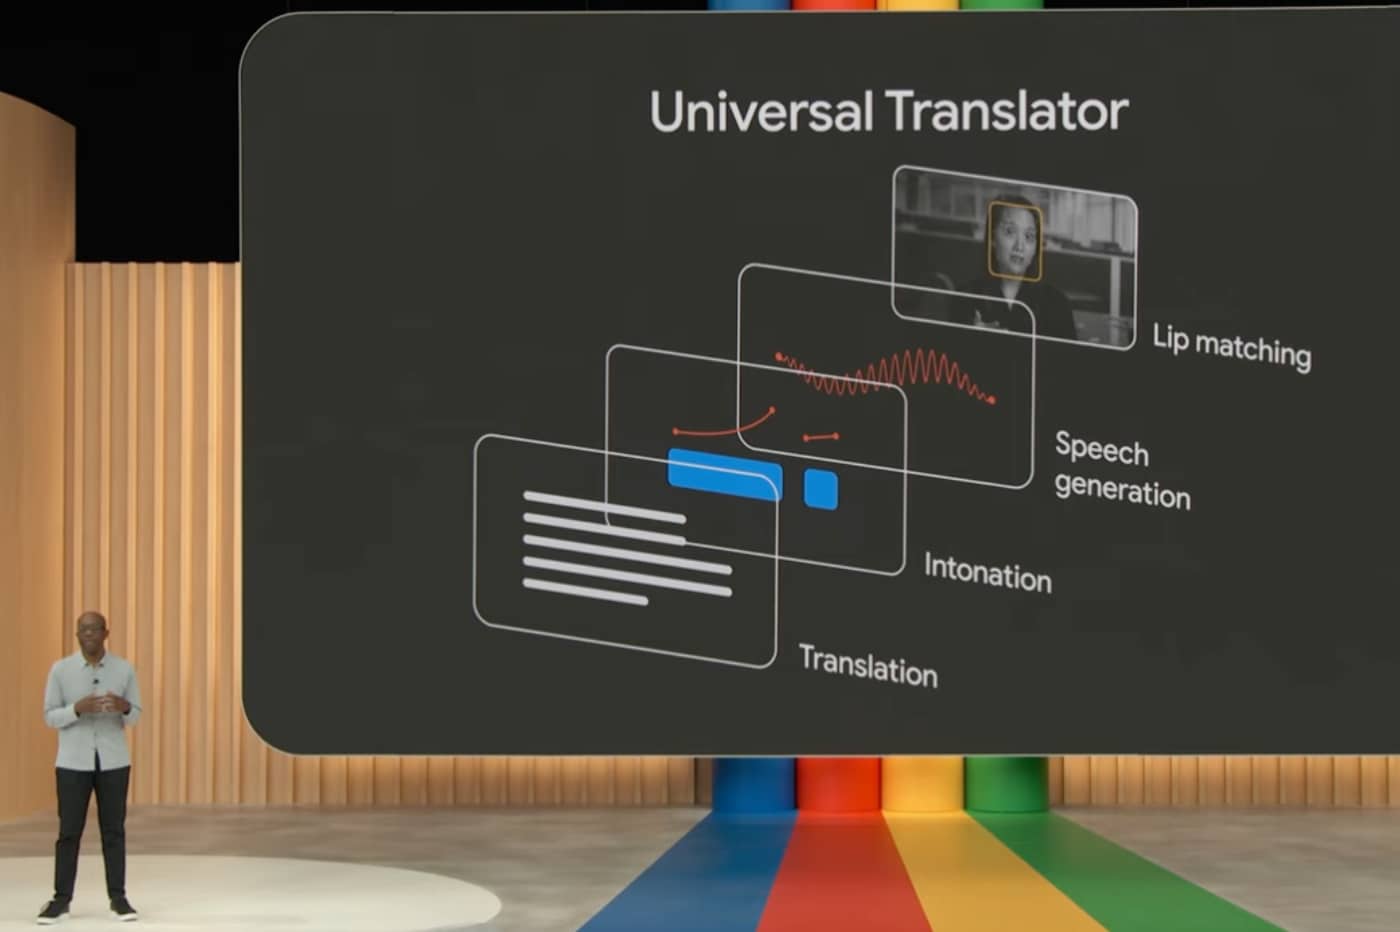 Les différentes étapes qui rythment le fonctionnement d'Universal Translator